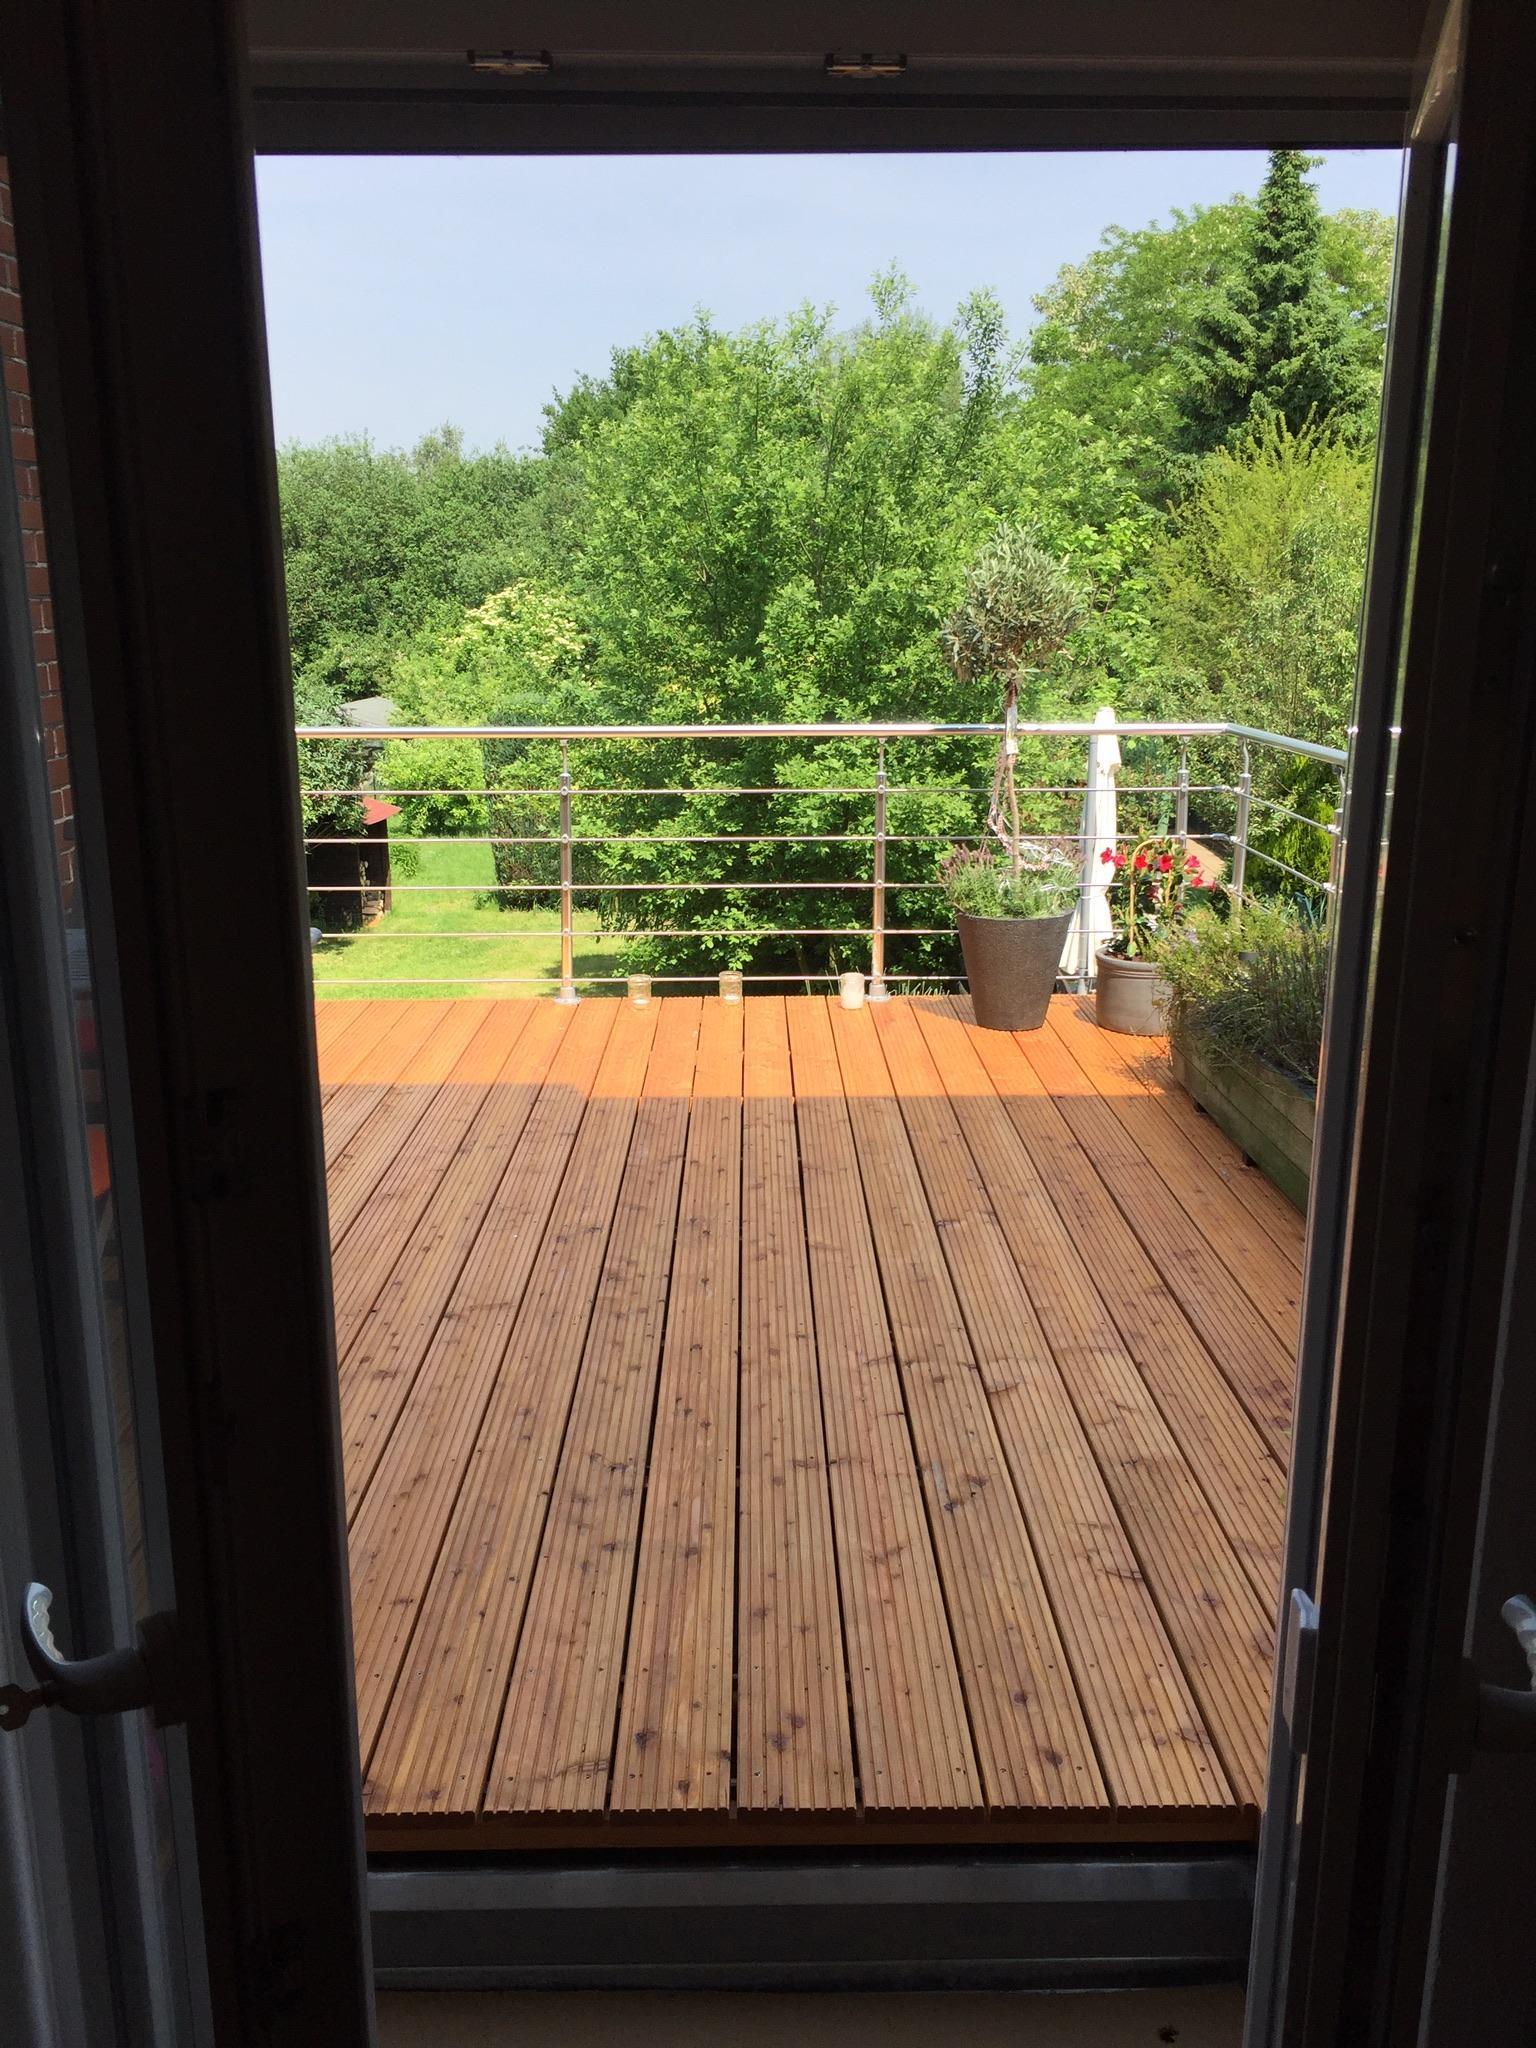 Neue Terrasse. Endlich direkt von der Küche in den Garten. #greenlife #summeriscoming